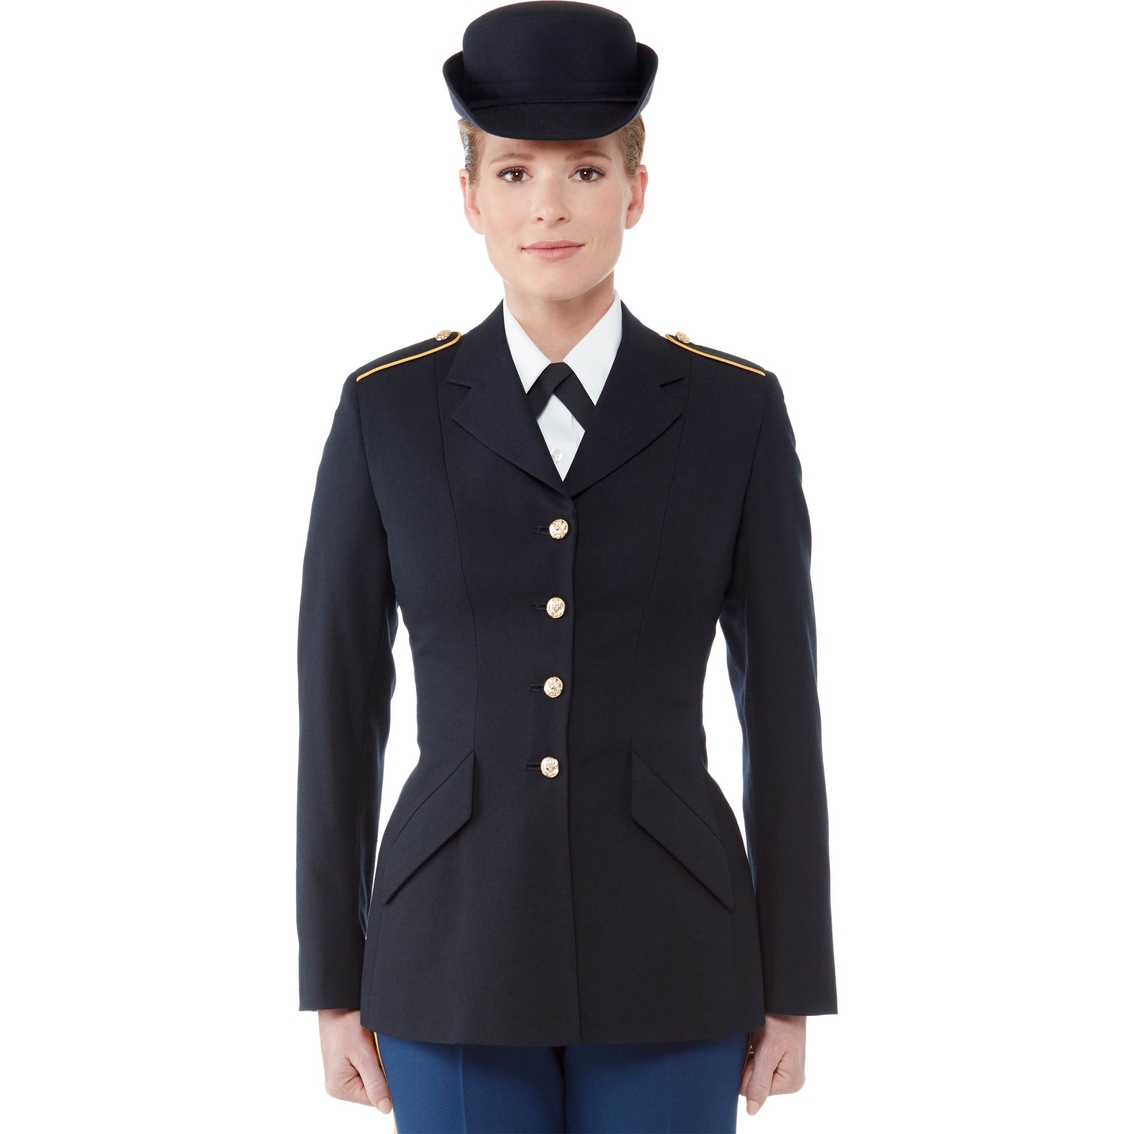 Army Blue Dress Uniform 114